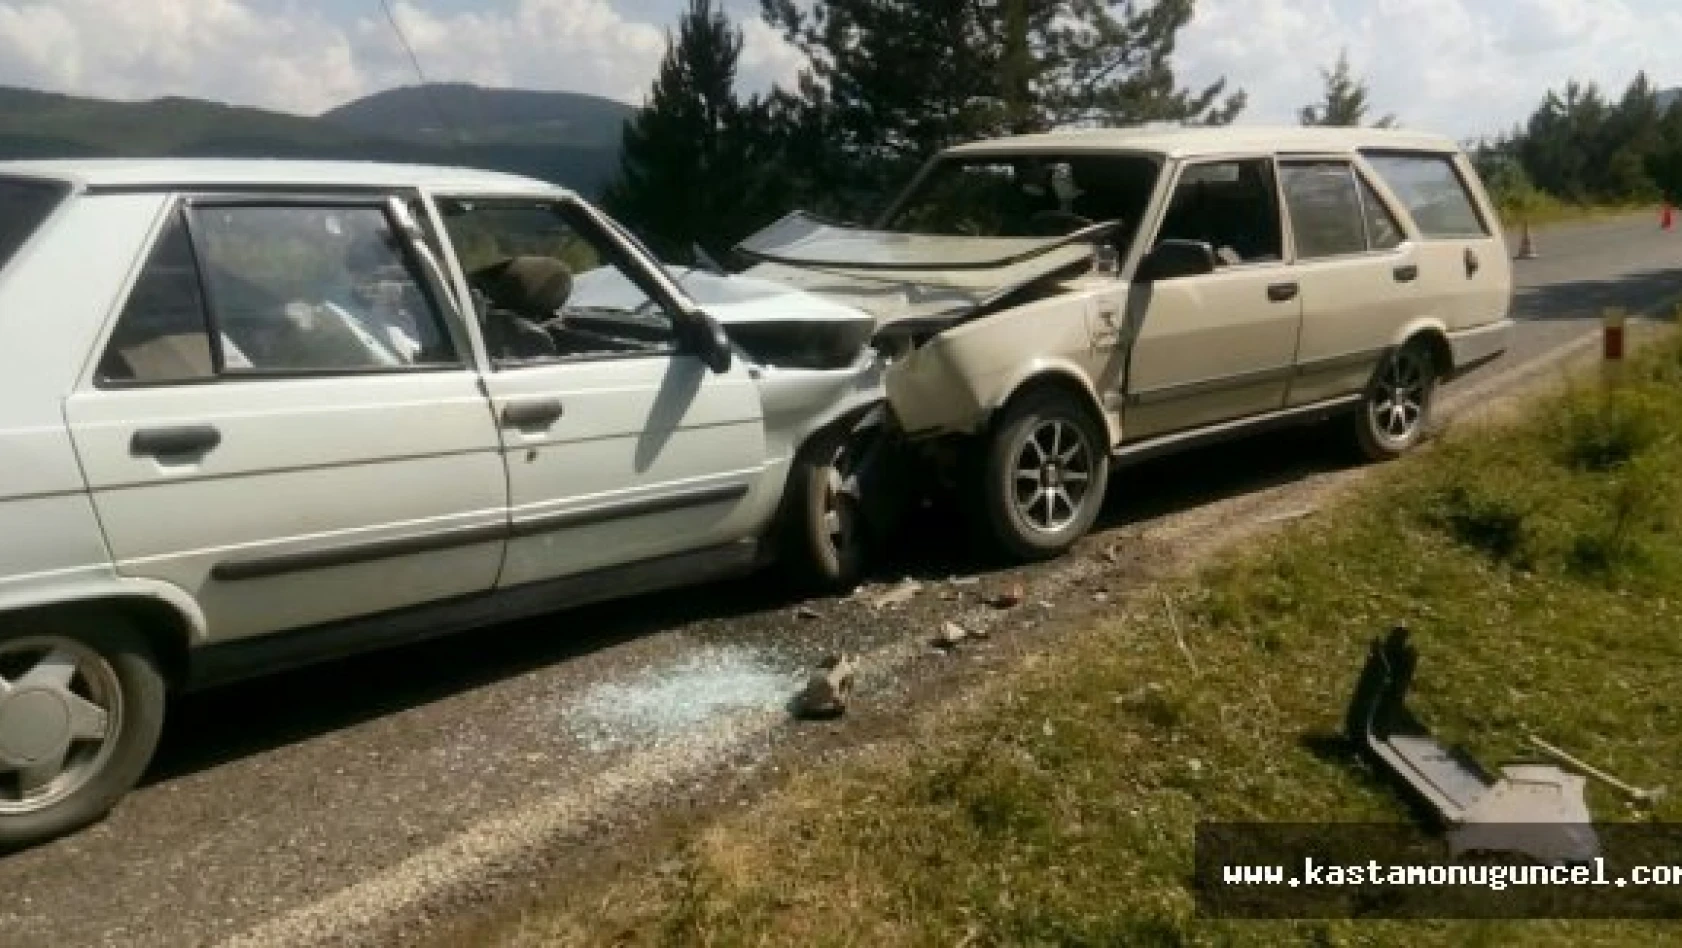 Kastamonu'da otomobil çarpıştı: 4 yaralı